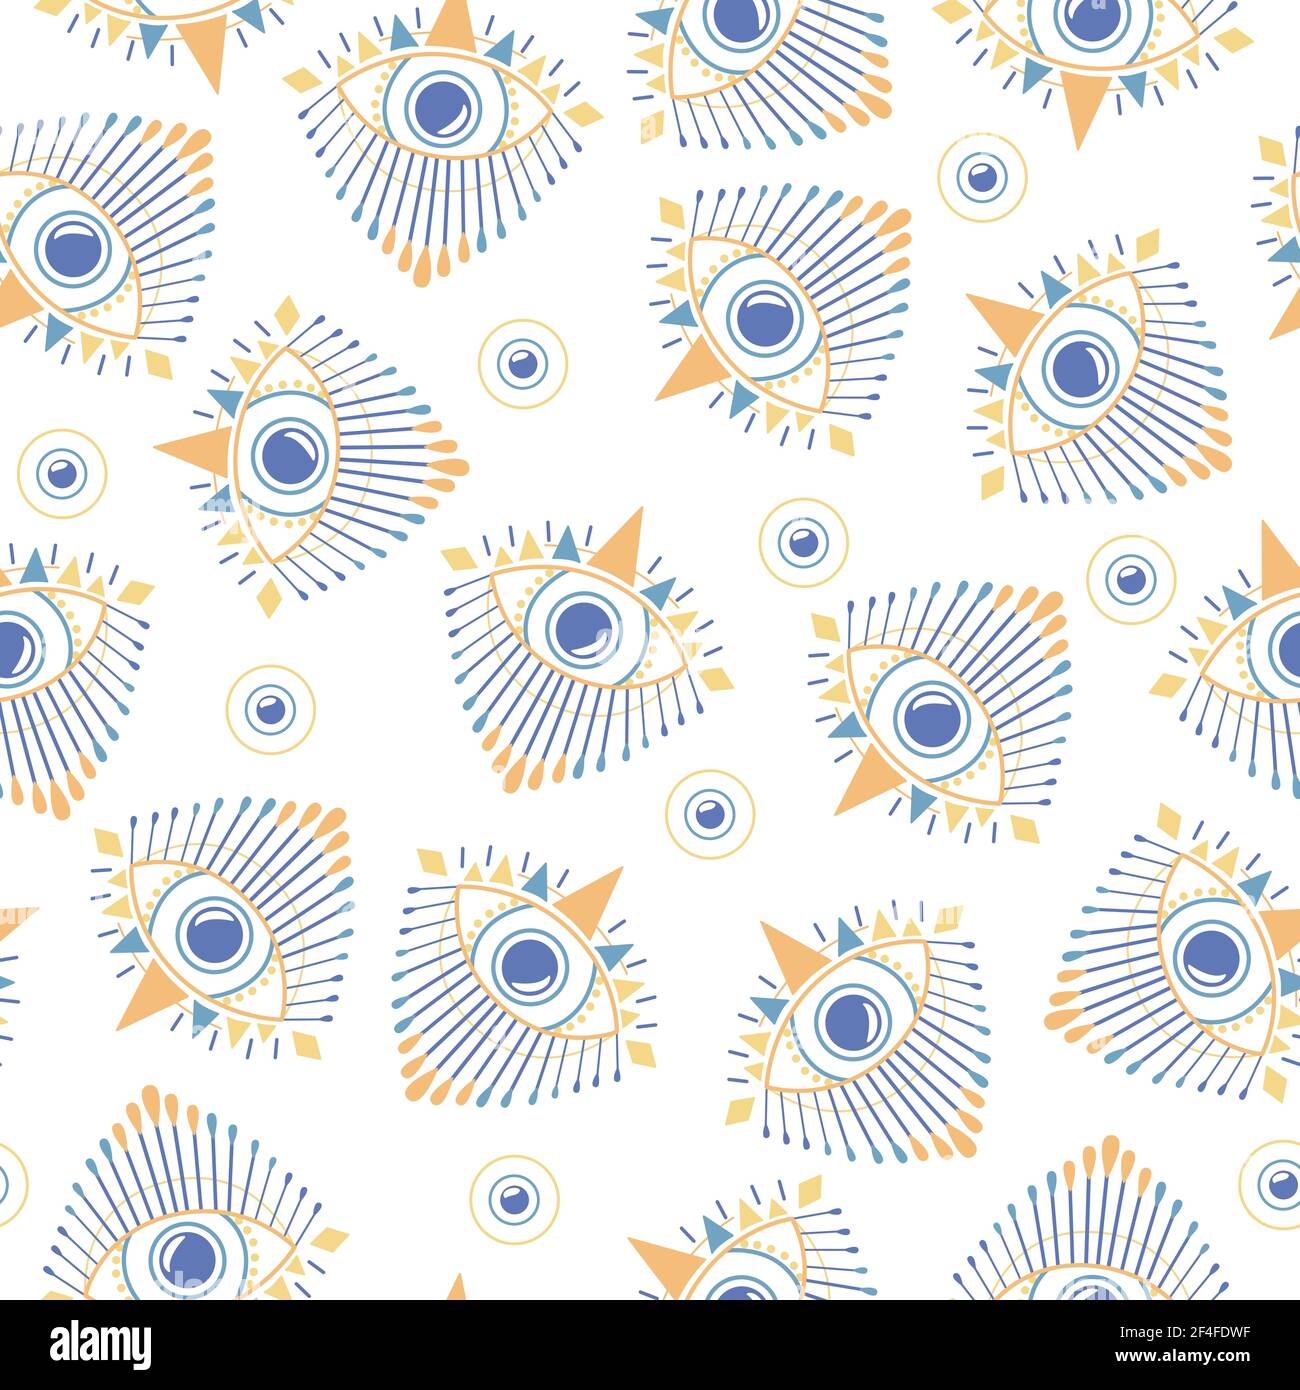 Blaue böse Augen nahtlose Muster mit gelben Elementen auf weißem Hintergrund. Grafischer geometrischer magischer Esoterik-Druck. Auge der Vorsehung. Vektor Stock Vektor